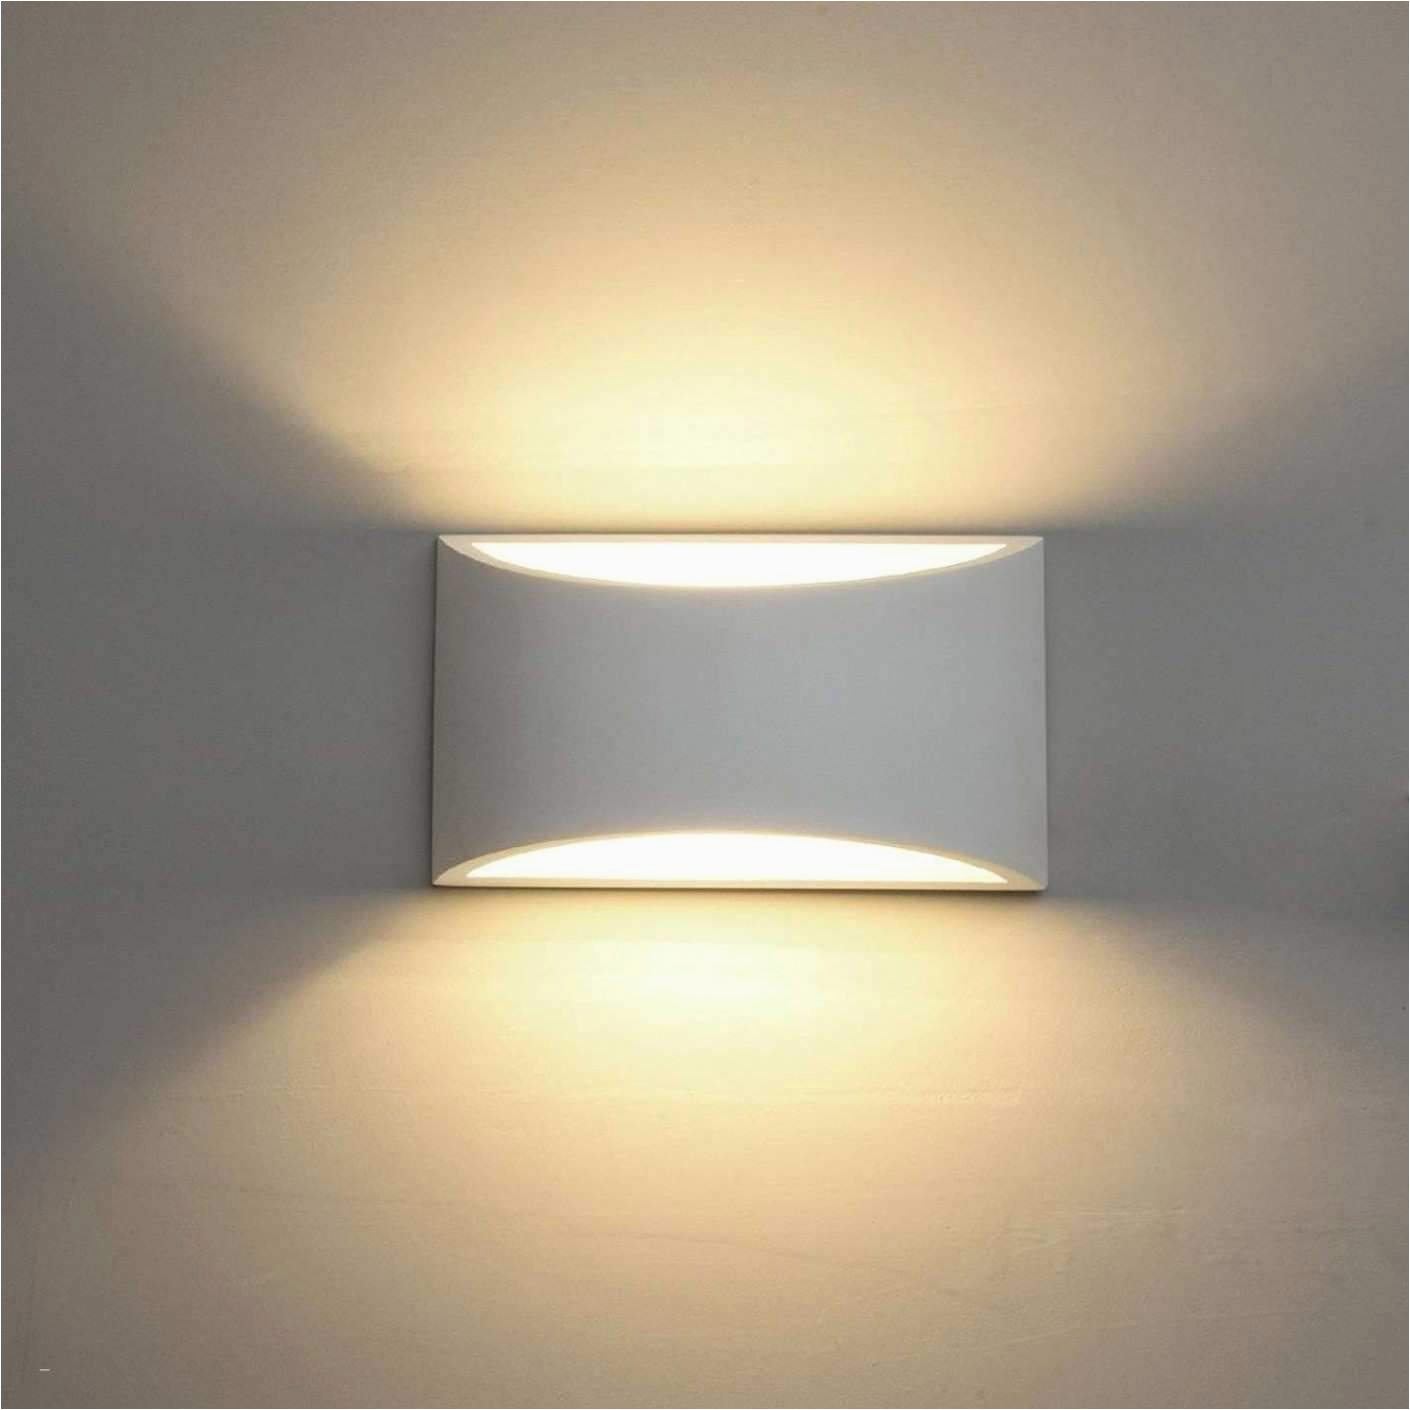 Badezimmer Lampe Obi 32 Schön Deckenlampe Wohnzimmer Dimmbar Elegant